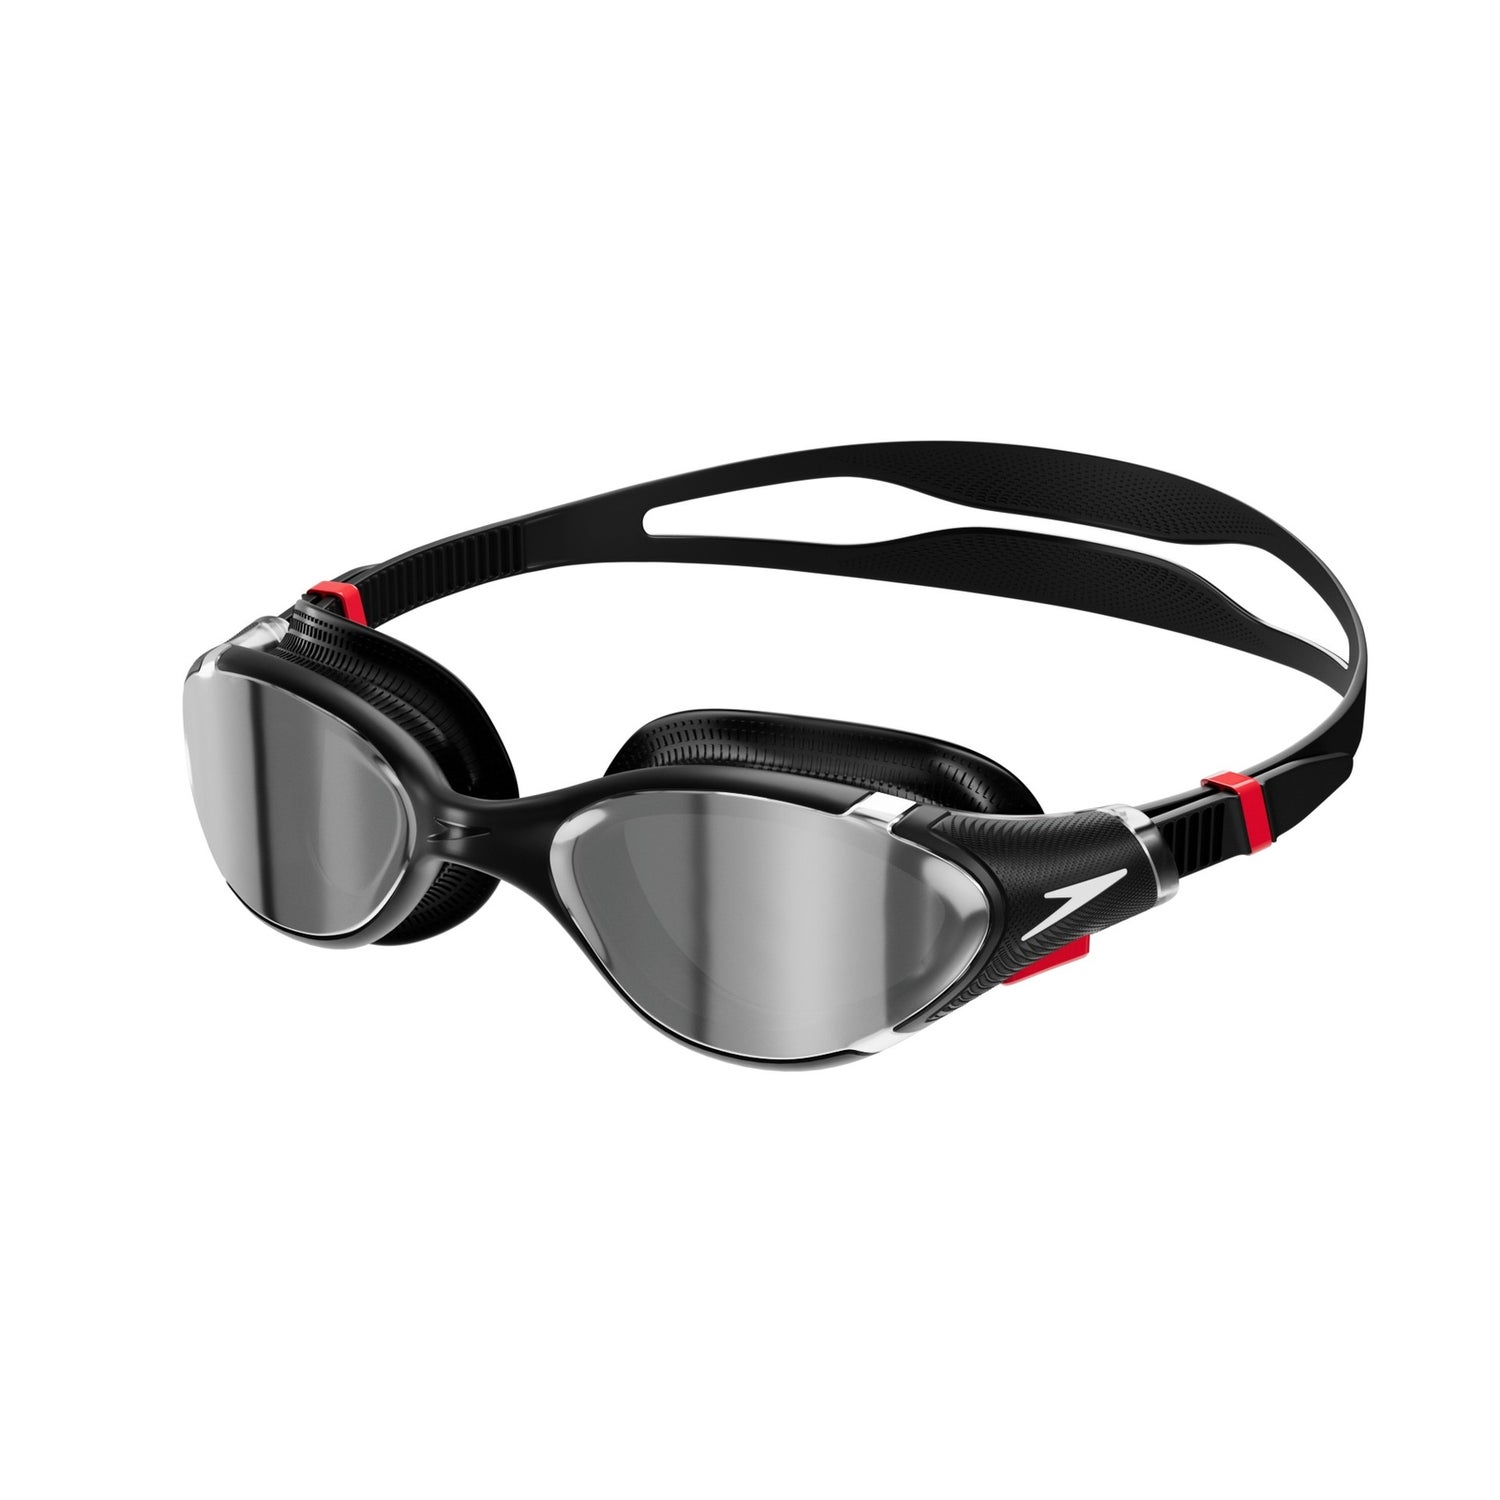 Speedo gafas de natación Biofuse 2.0 en promoción